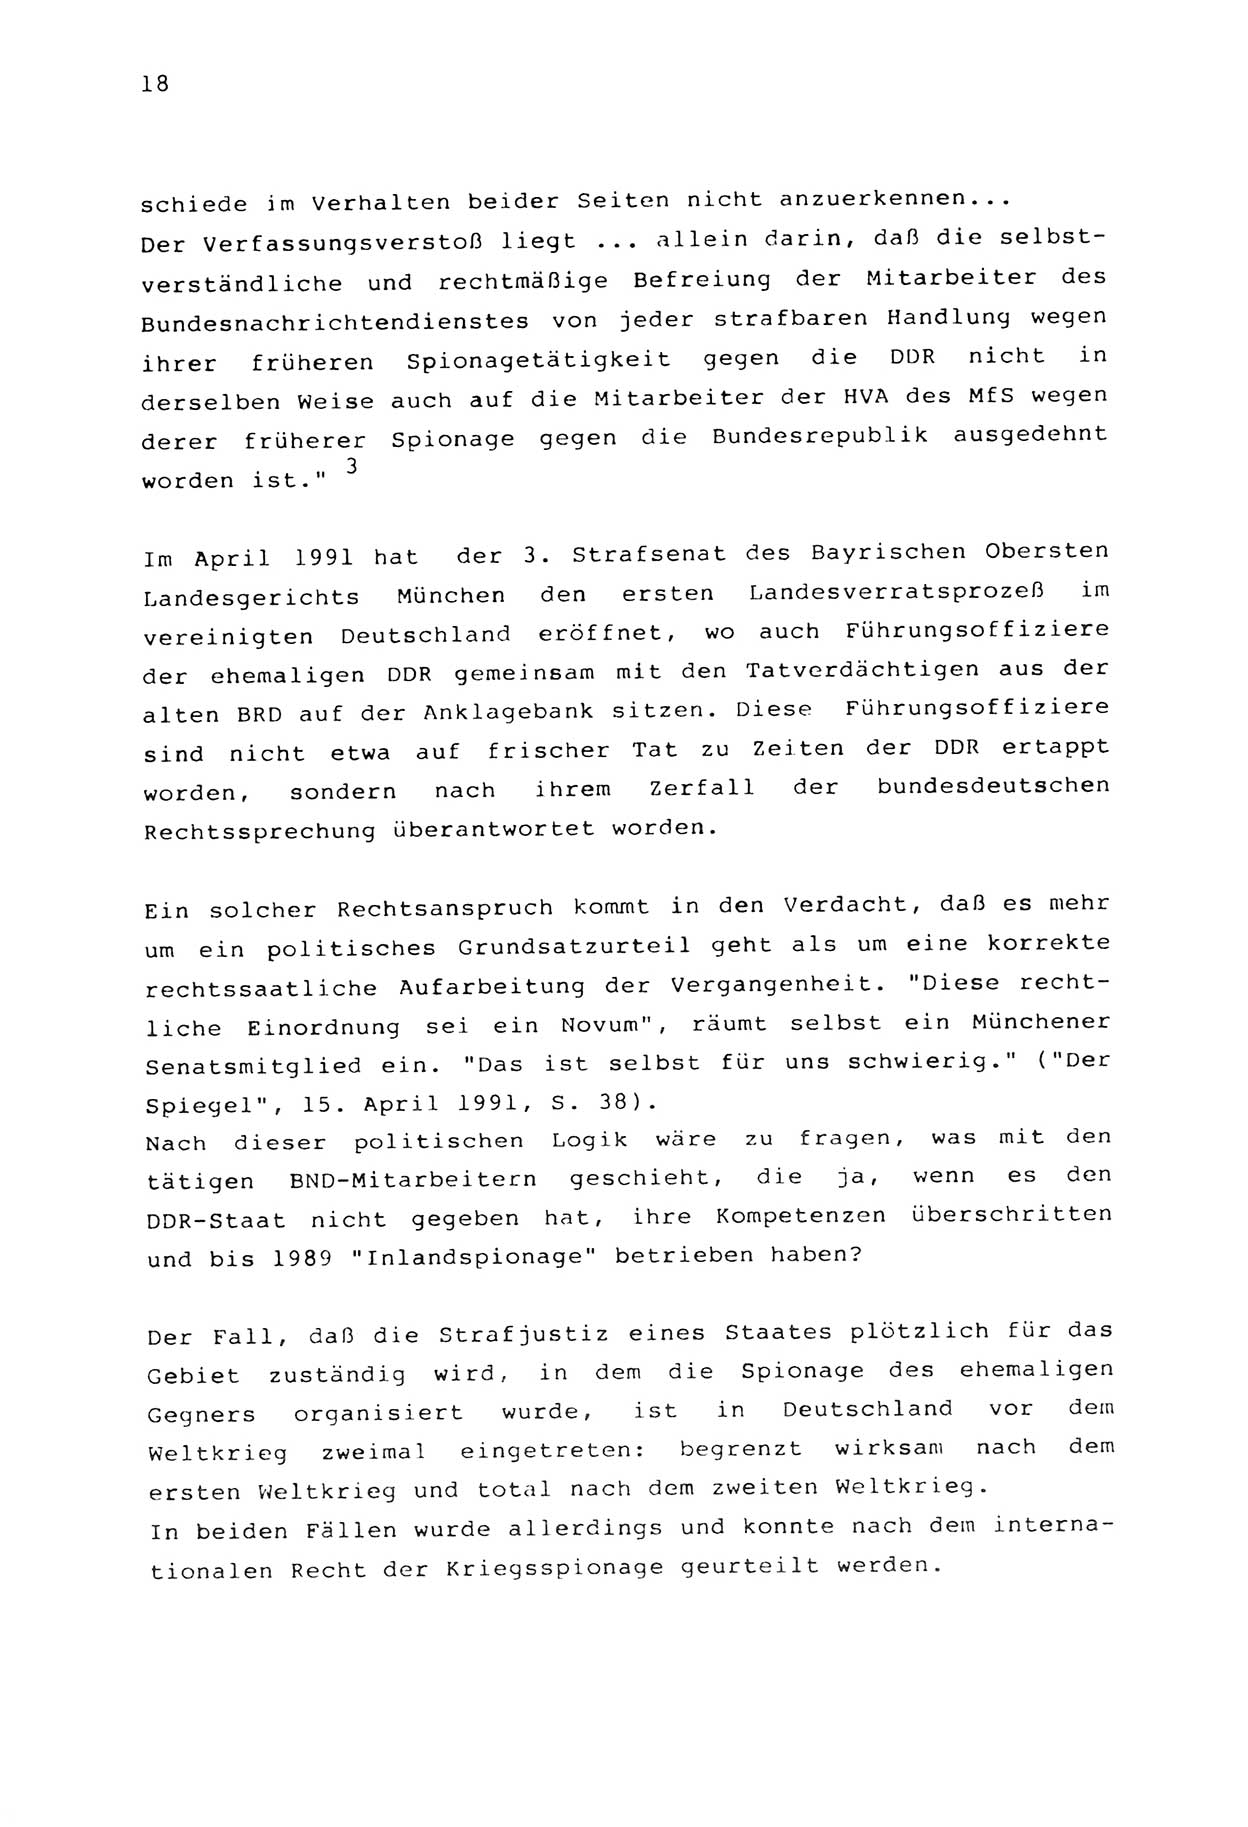 Zwie-Gespräch, Beiträge zur Aufarbeitung der Stasi-Vergangenheit [Deutsche Demokratische Republik (DDR)], Ausgabe Nr. 2, Berlin 1991, Seite 18 (Zwie-Gespr. Ausg. 2 1991, S. 18)